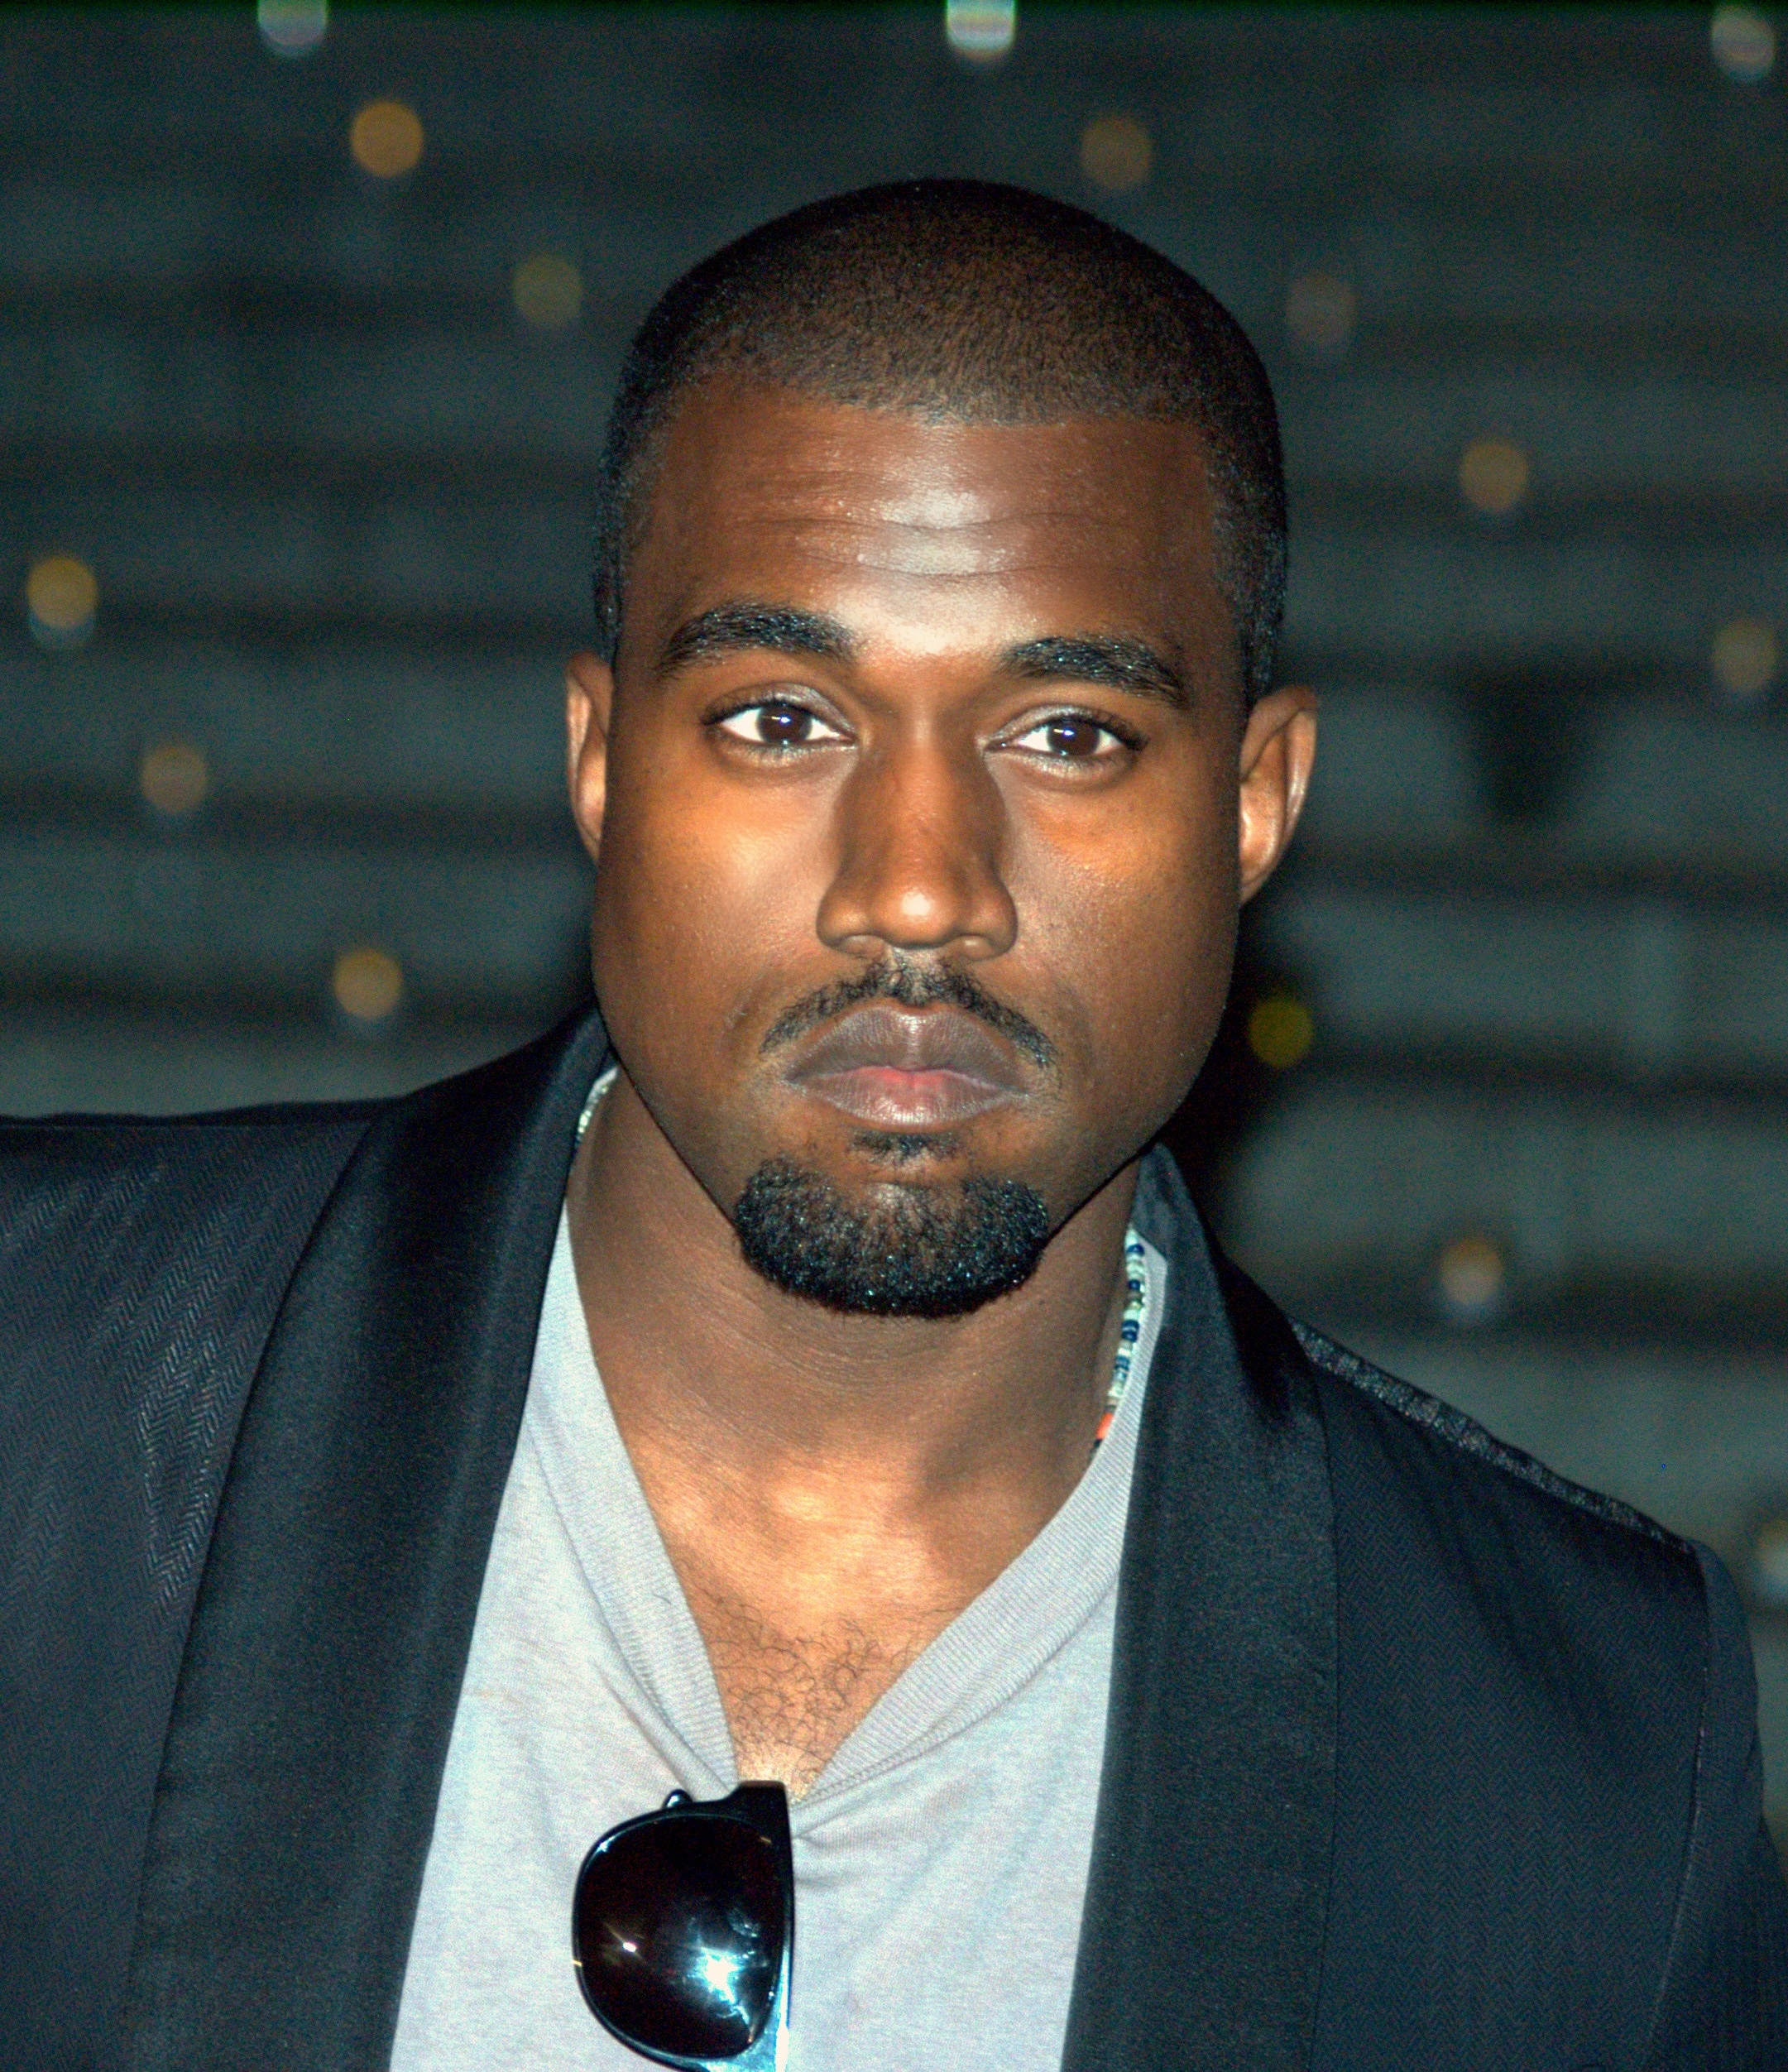 GAME PLAY: Kanye West şi-a lansat primul joc video. Aşa arată trailerul „Only One